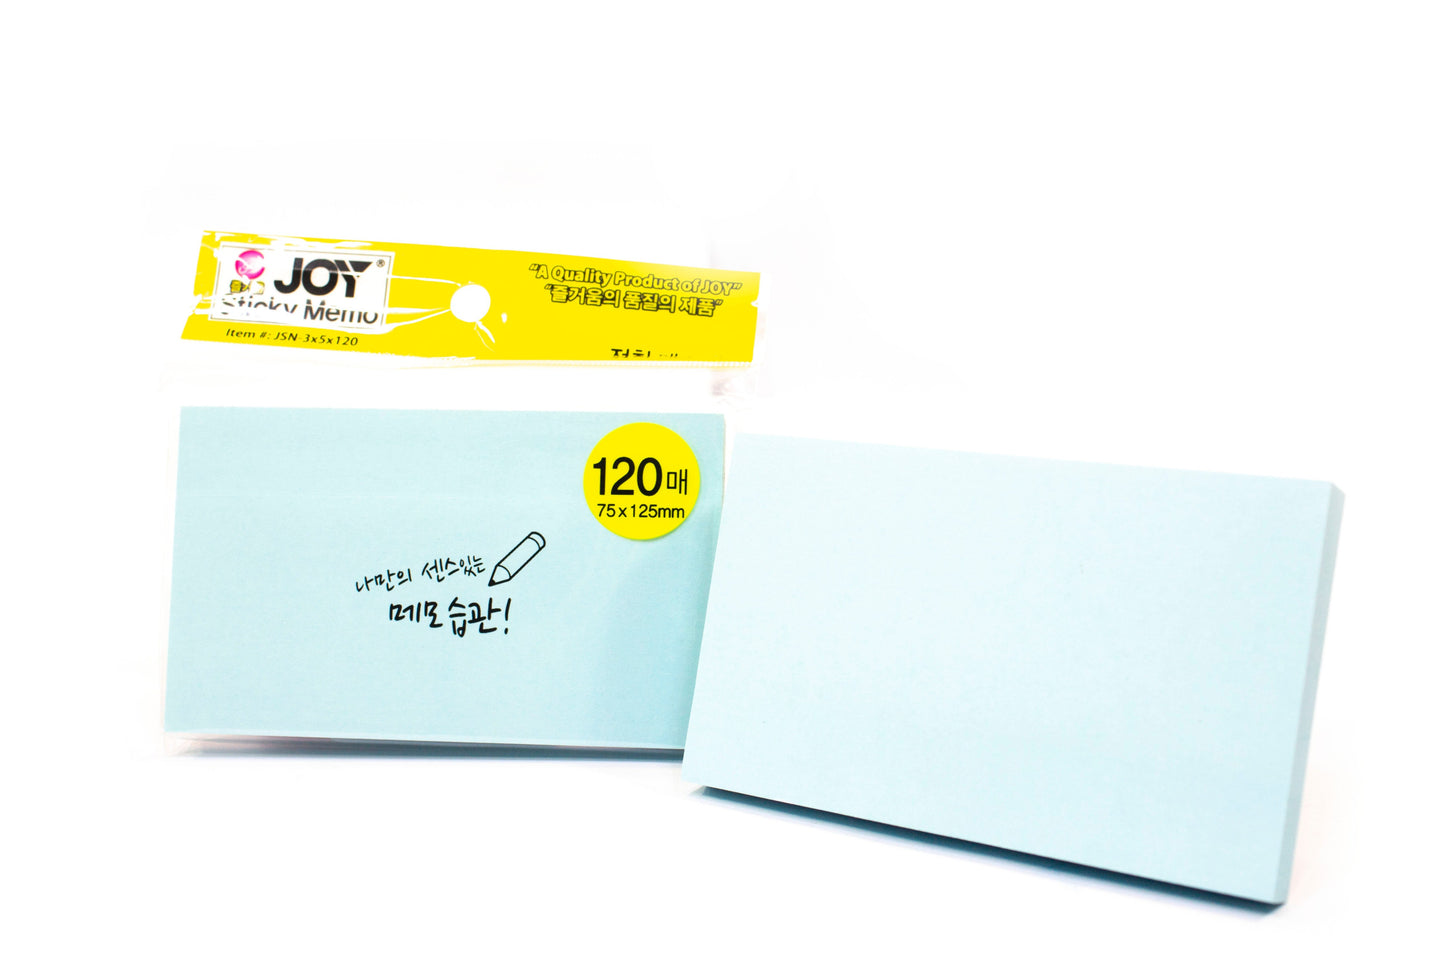 Joy Sticky Notes JSN-3x5x120 12Pad (Asstd. Color)